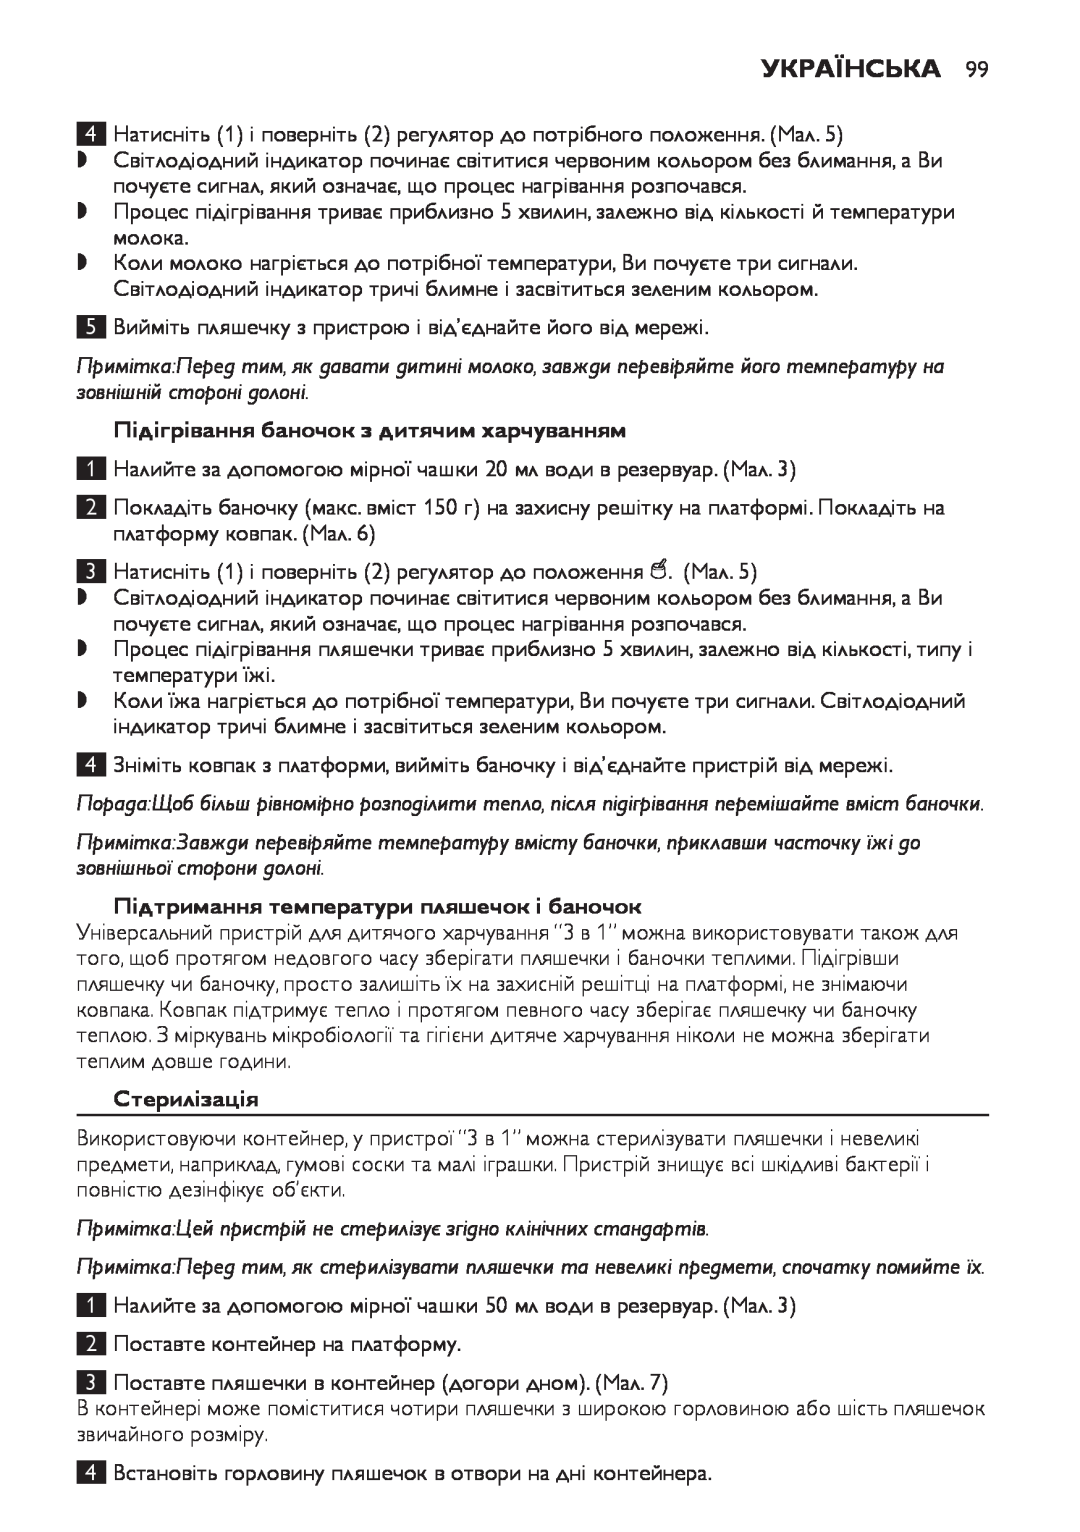 Philips SCF280 manual Українська, Підігрівання баночок з дитячим харчуванням, Підтримання температури пляшечок і баночок 